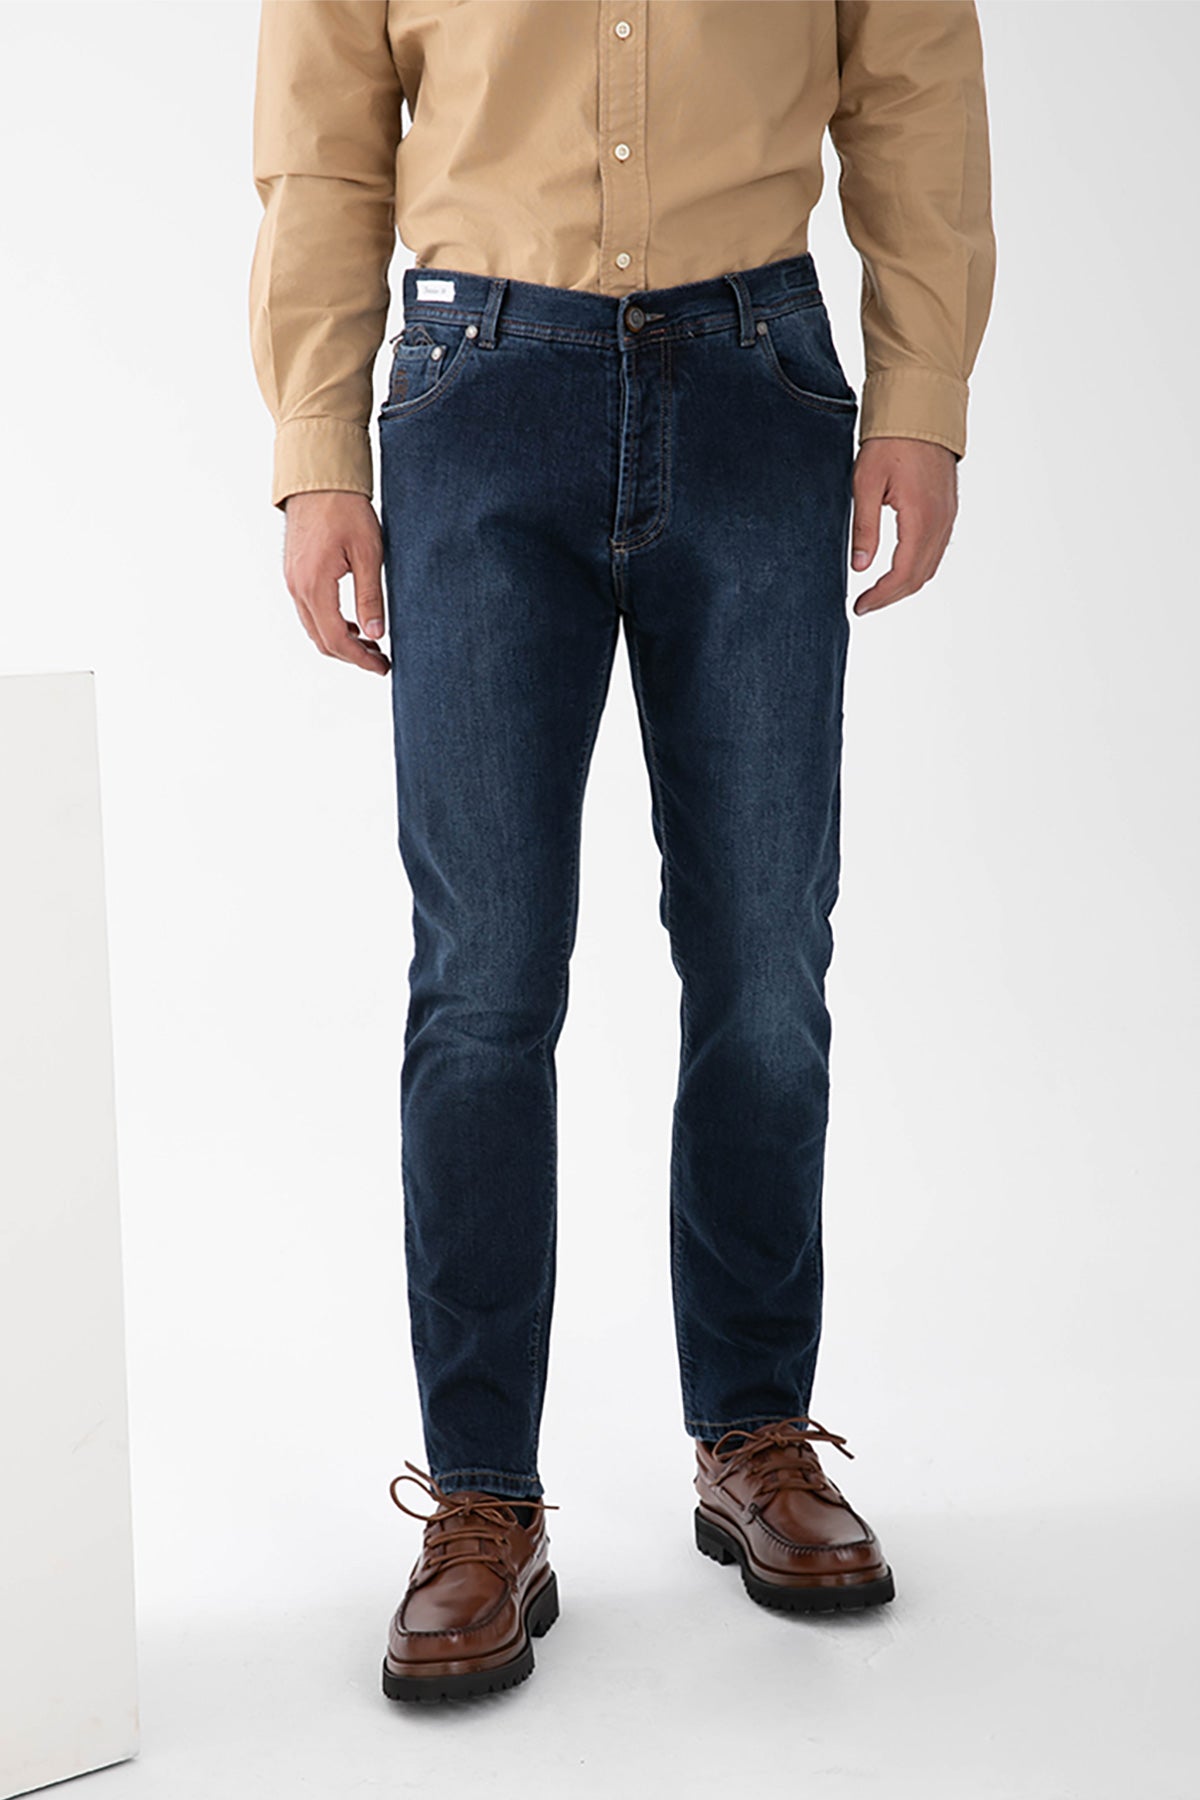 Richard J. Brown Hanoi Yüksek Bel Slim Regular Fit Jeans-Libas Trendy Fashion Store